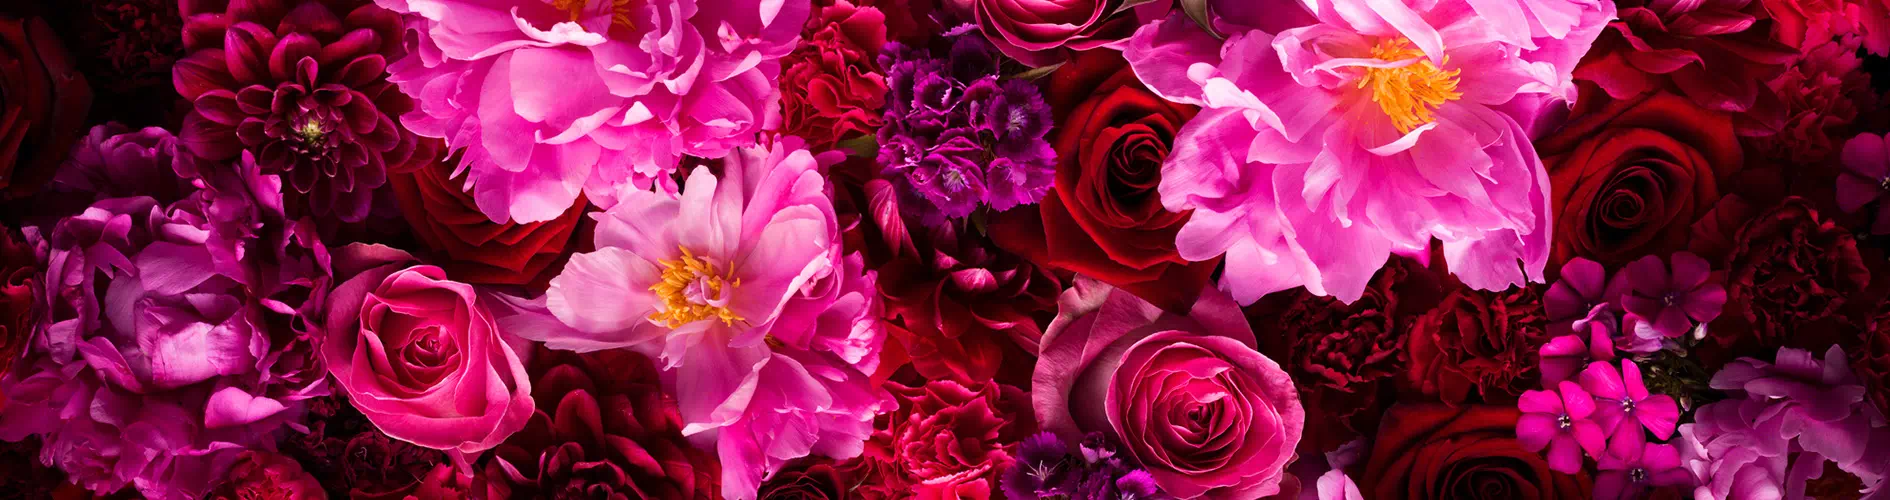 Kwiaty w różowych odcieniach